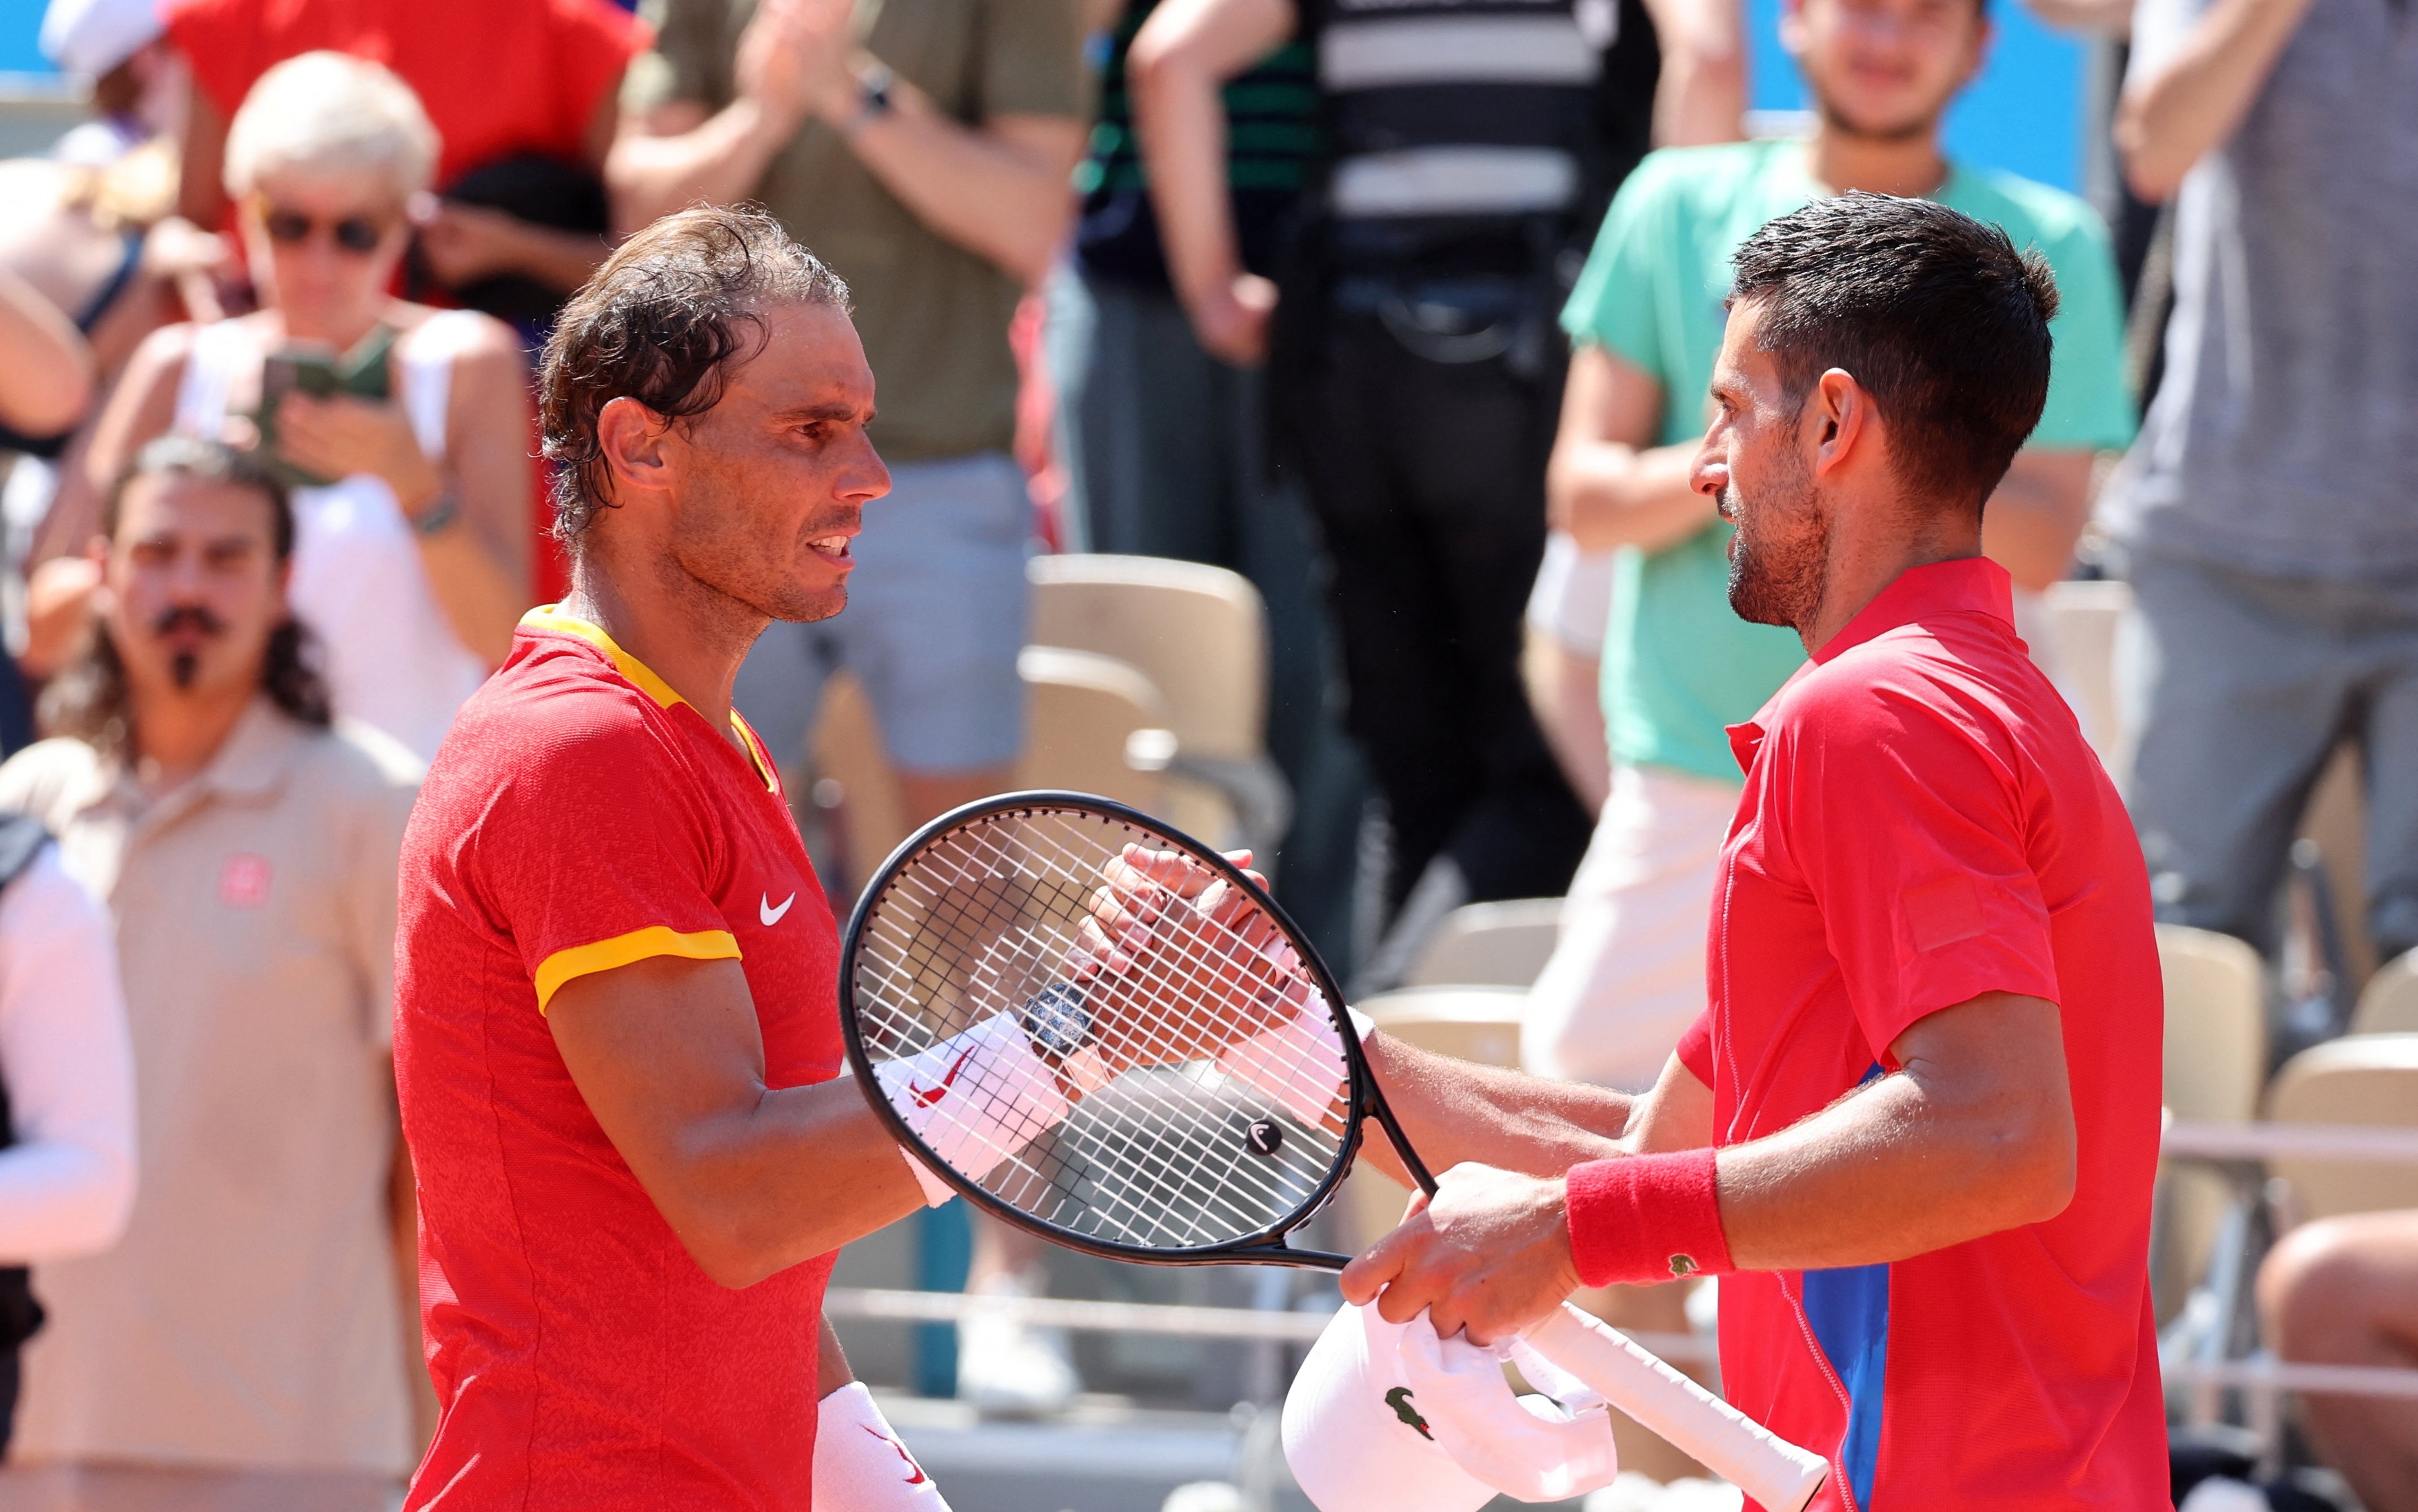 Mesajul superb al lui Rafael Nadal pentru Novak Djokovic, după duelul de la JO: ”A trebuit să accept asta”